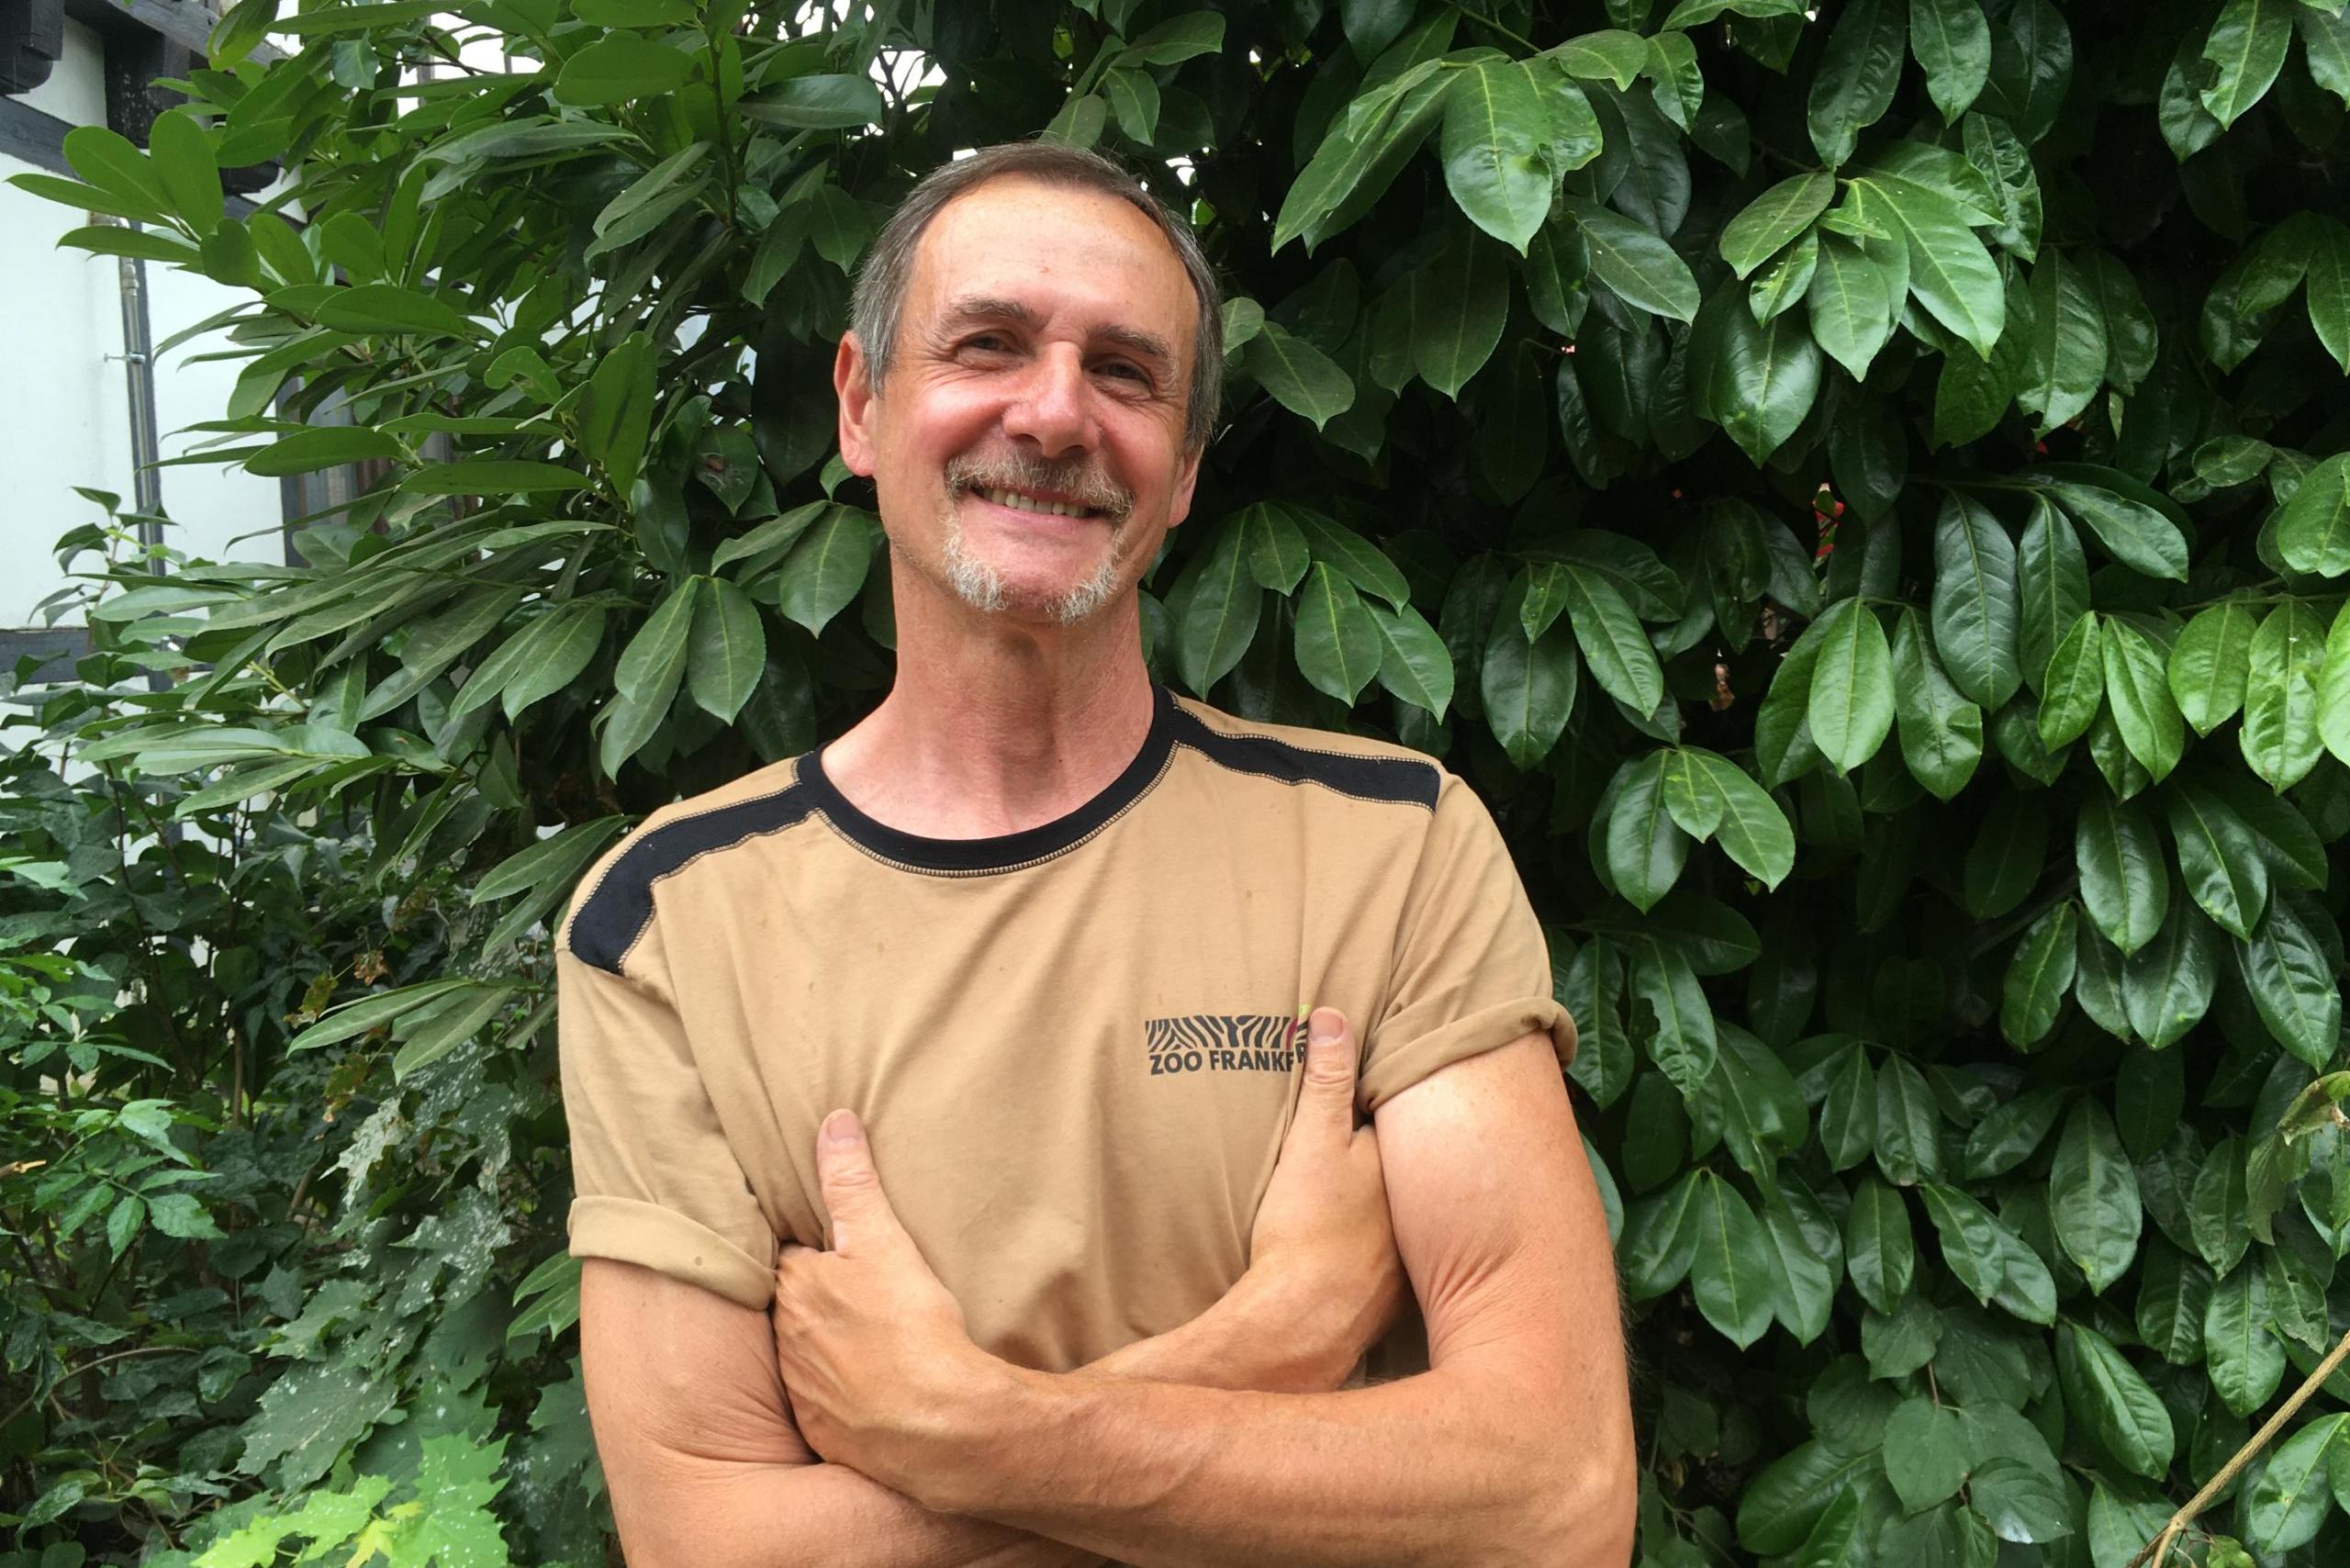 Auch Willfried "Willi" Altmann arbeitet in der Afrikasavanne. Und das schon seit 47 Jahren. Er arbeitet gerne im Kiwizentrum, indem neben den Kiwis auch die Baumkängurus leben.